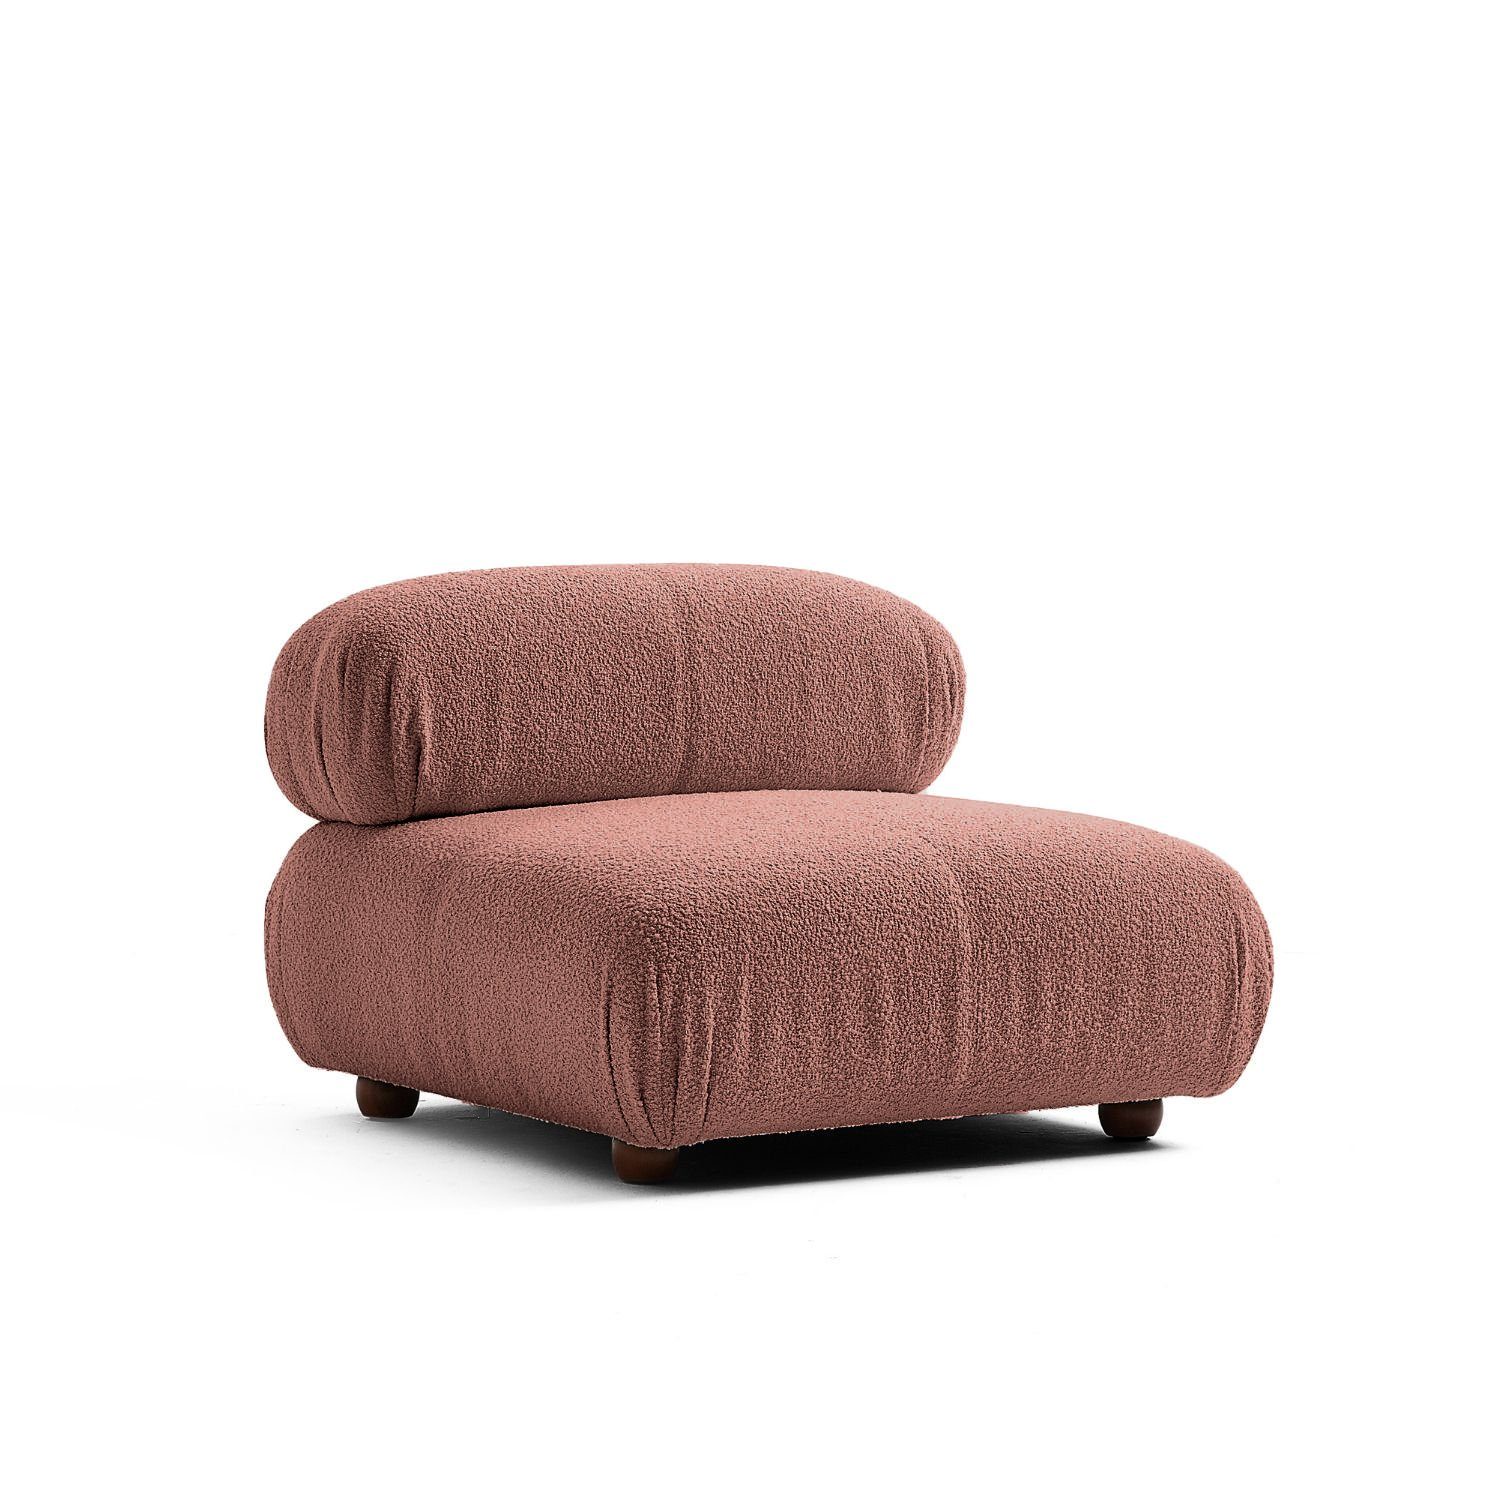 Touch me Sofa Knuffiges Sitzmöbel neueste Generation aus Komfortschaum Schokoladenbraun-Lieferung und Aufbau im Preis enthalten!